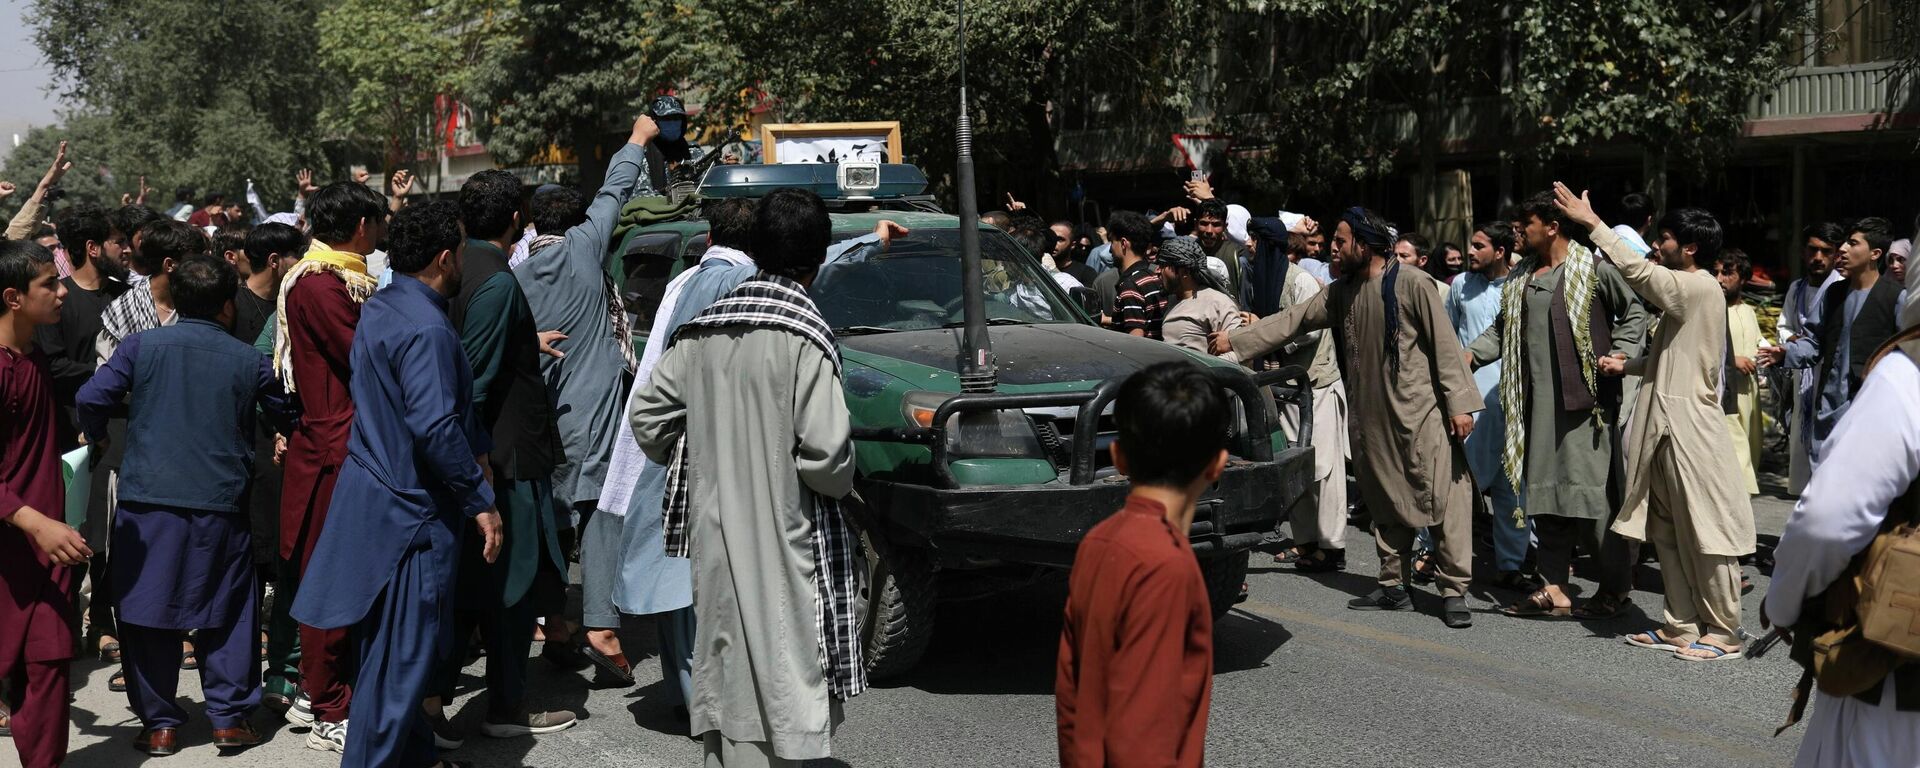 Протестующие в Кабуле окружили автомобиль с флагом движения Талибан (запрещено в РФ) - Sputnik Латвия, 1920, 07.09.2021